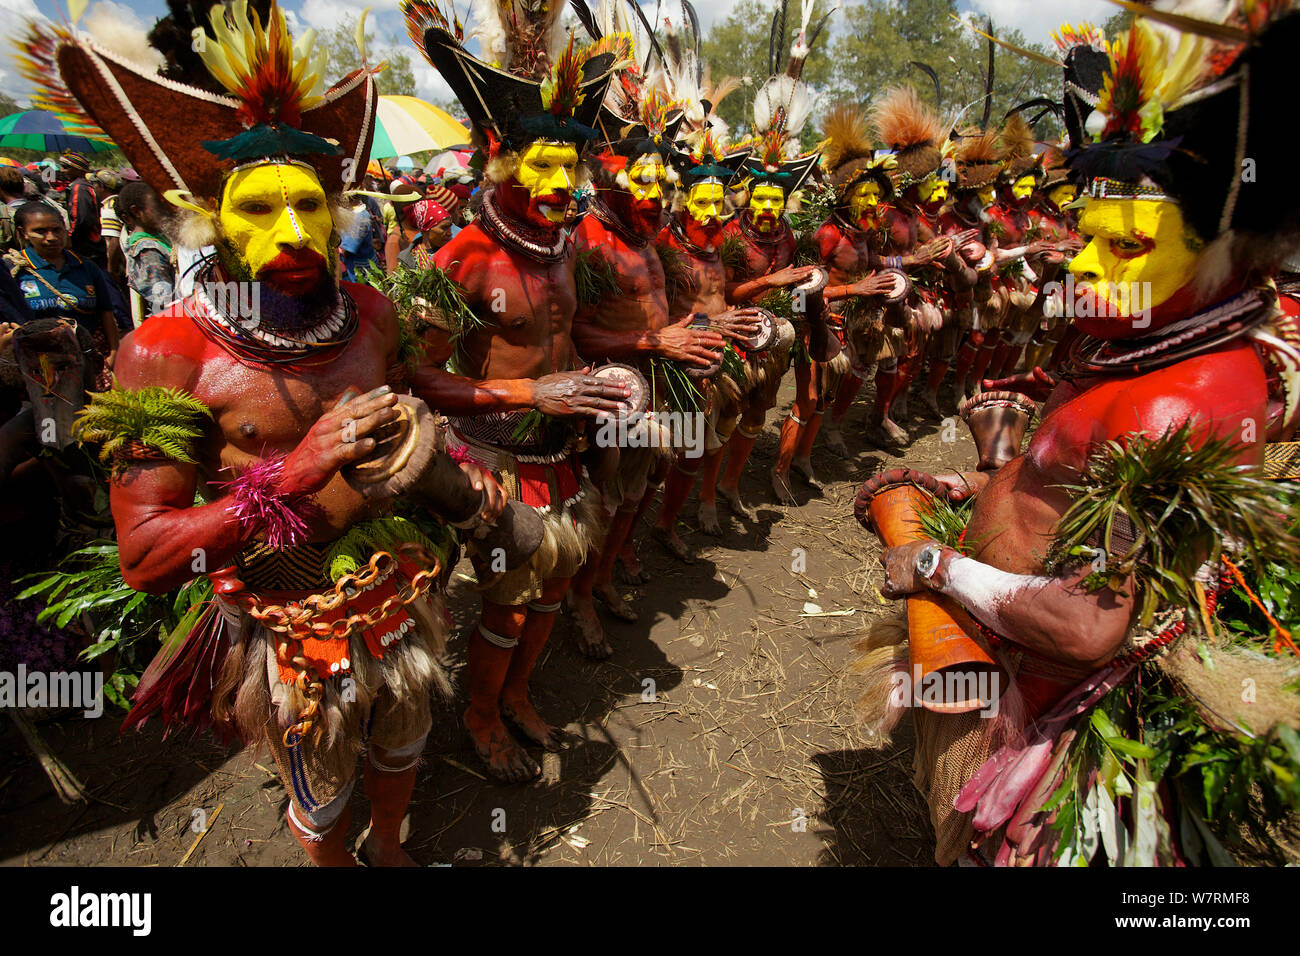 Huli 'singsing' ceremonia de danza. Huli wigmen vistiendo cabello pelucas y plumas de diversas aves del paraíso y otras especies de aves. Tari Valle, provincia de Southern Highlands, Papua Nueva Guinea. Noviembre de 2010 Foto de stock